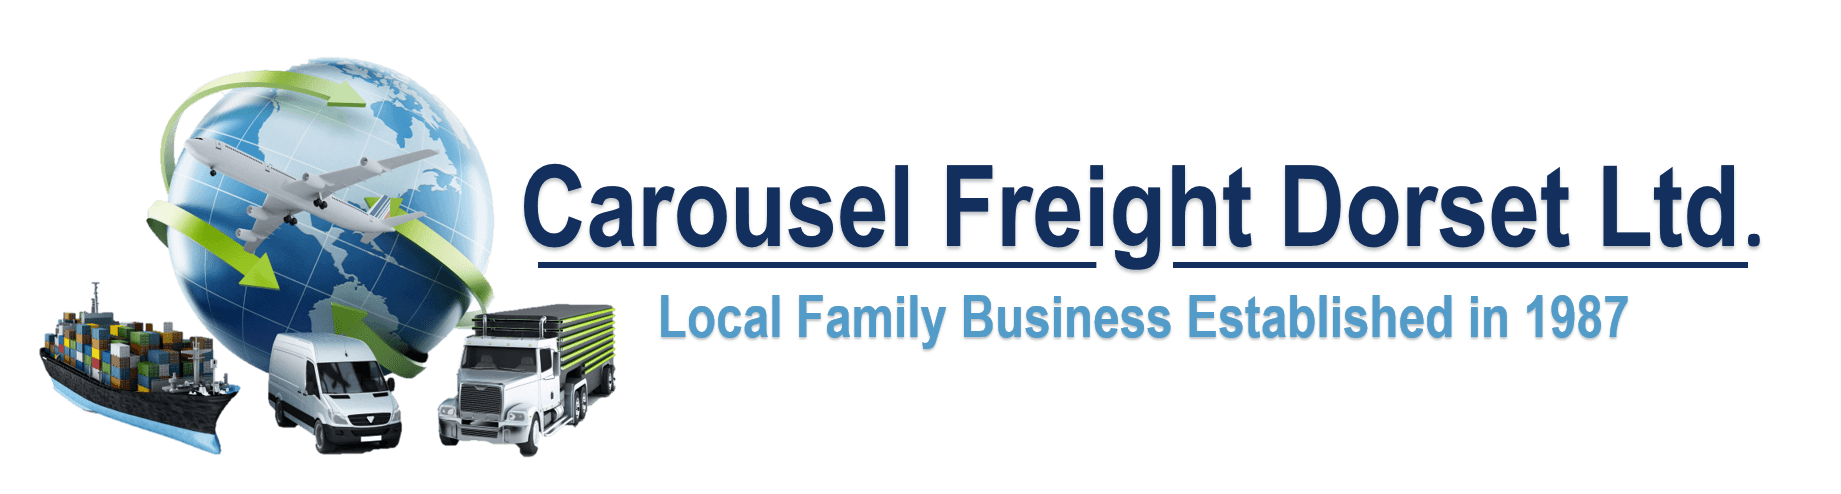 Carousel Freight (Dorset) Ltd logo